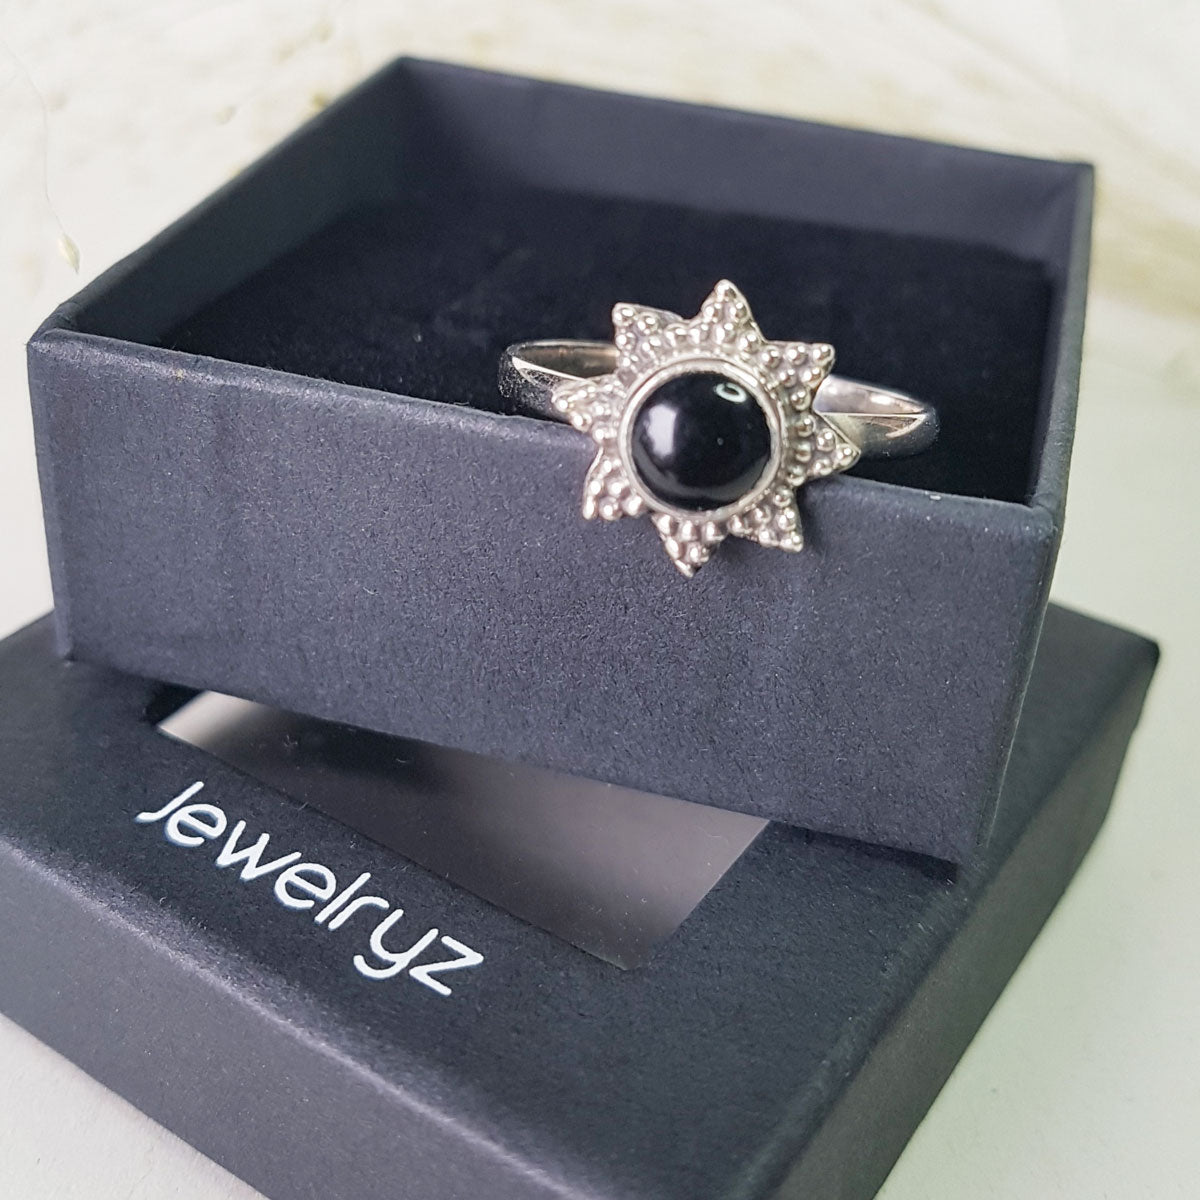 Solene | Ring 925 zilver met zwarte onyx edelsteen